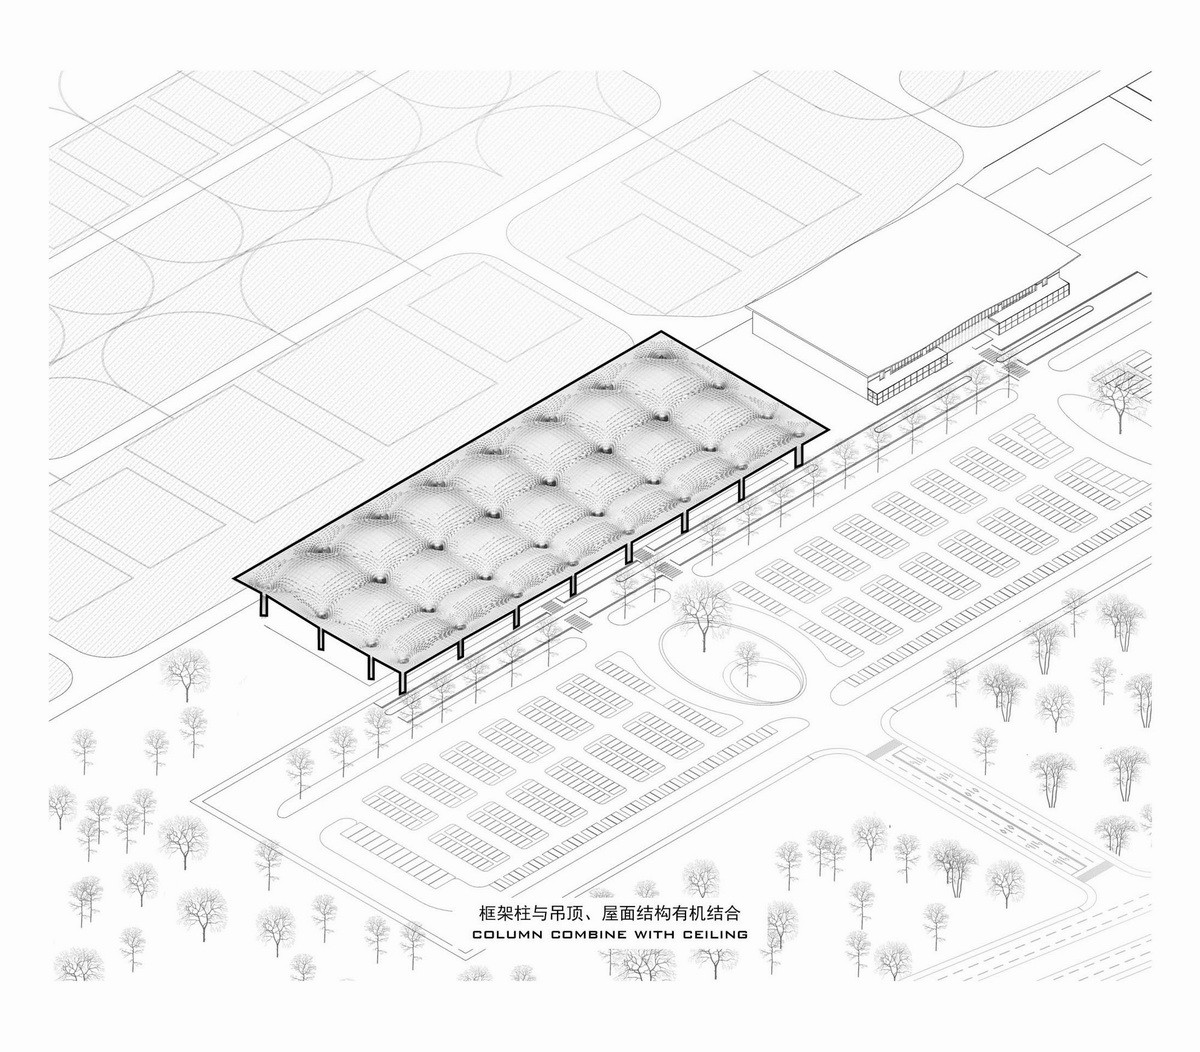 呼伦贝尔海拉尔机场扩建工程建筑设计/中国建筑设计研究院一合研究中心U10